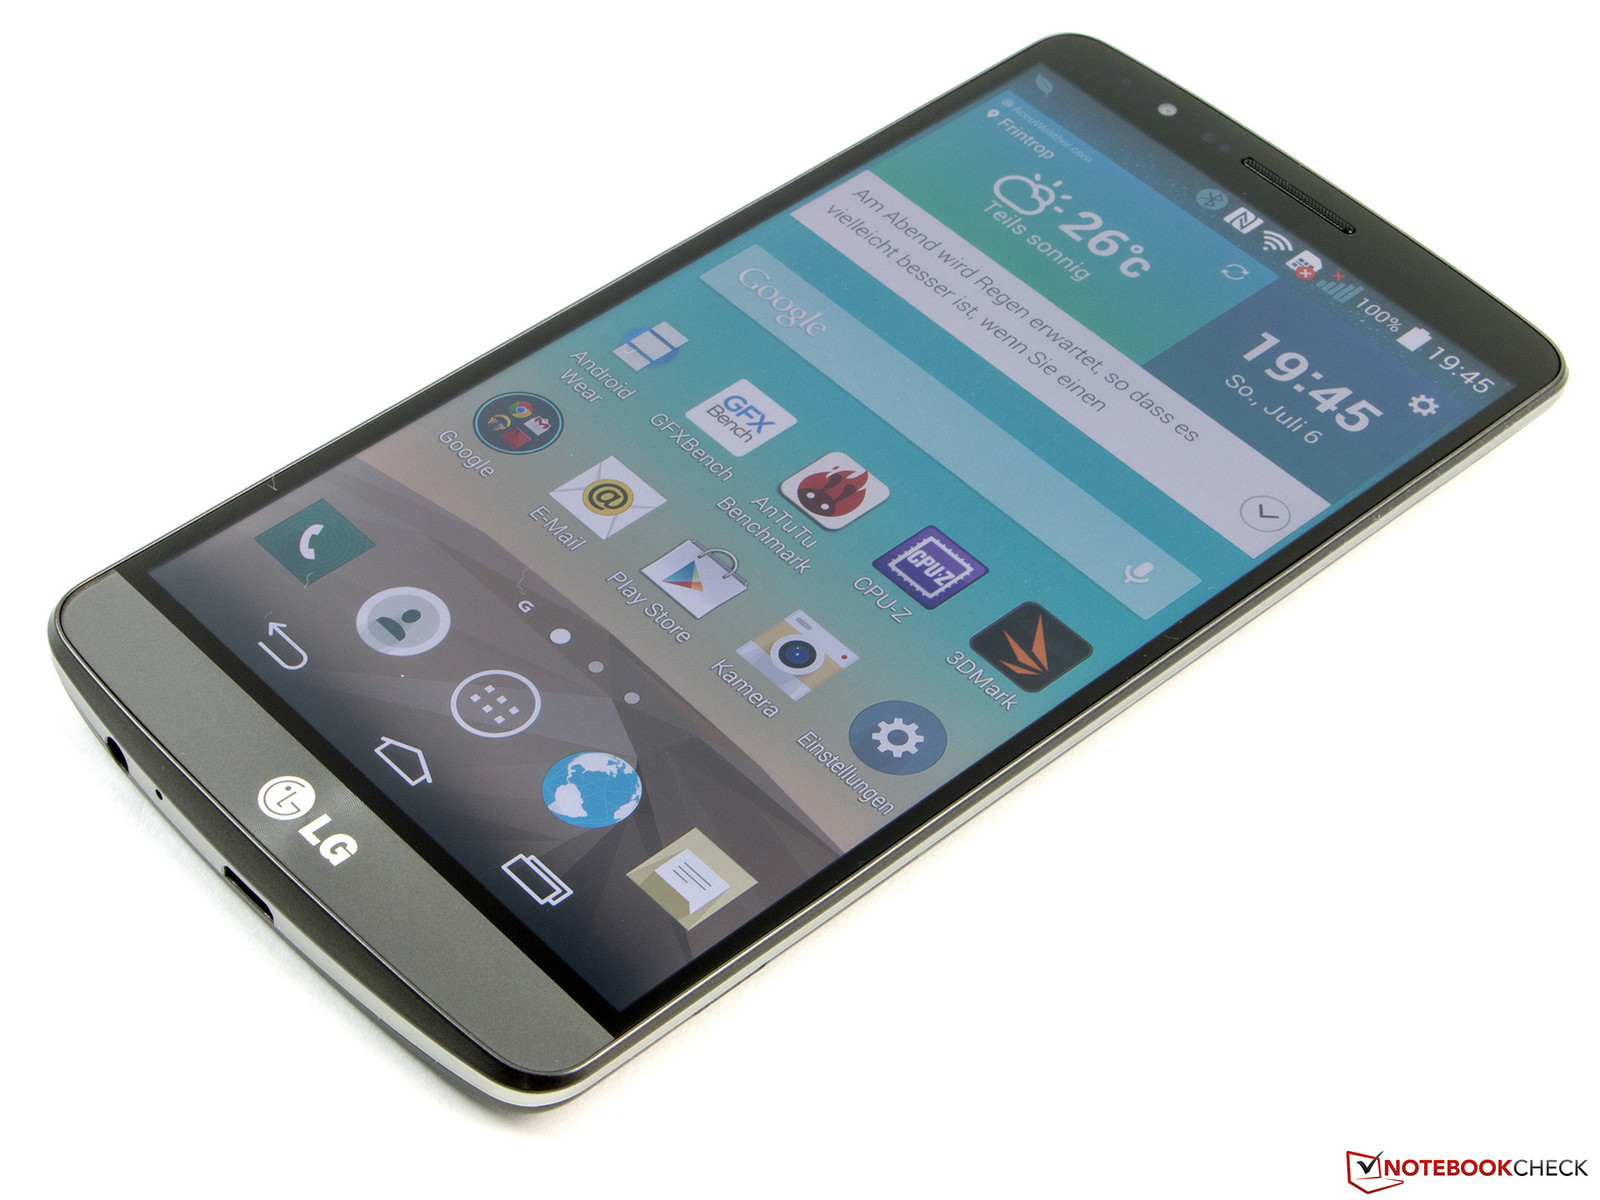 LG G3 Vigor: A premium budget phone - Video - CNET